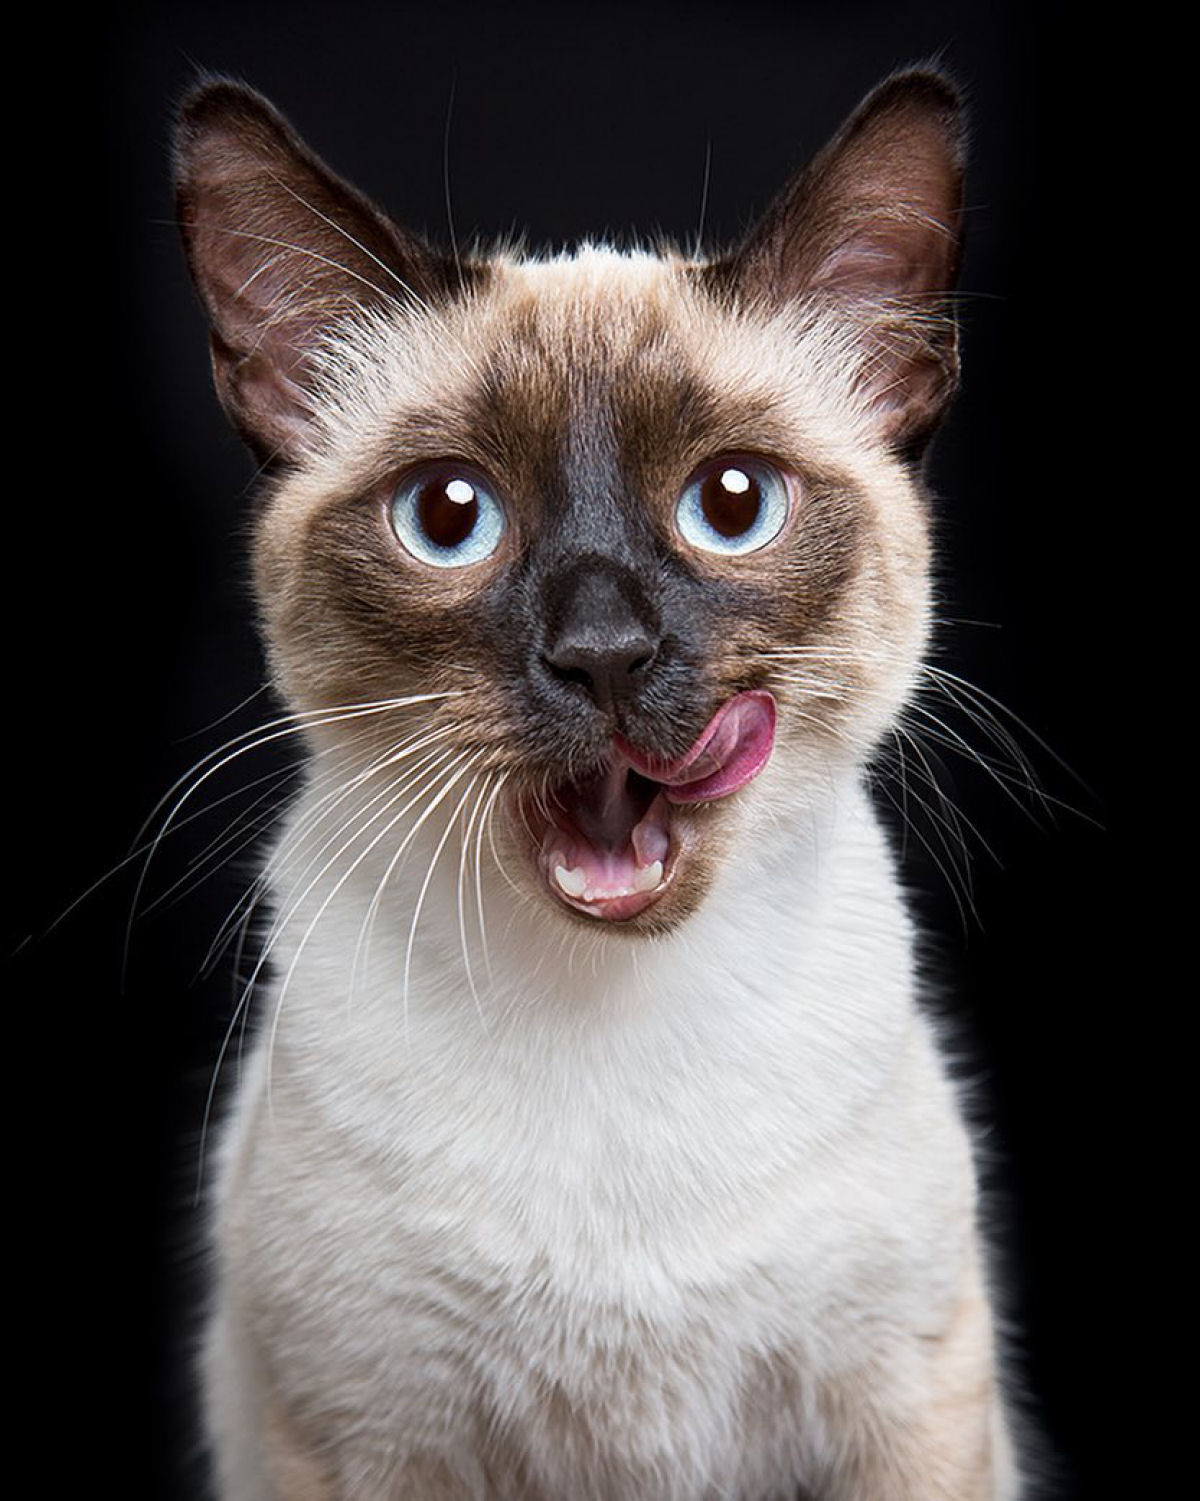 Fotos engraçadas revelam as emoções mal-humoradas e apatetadas de gatos 11